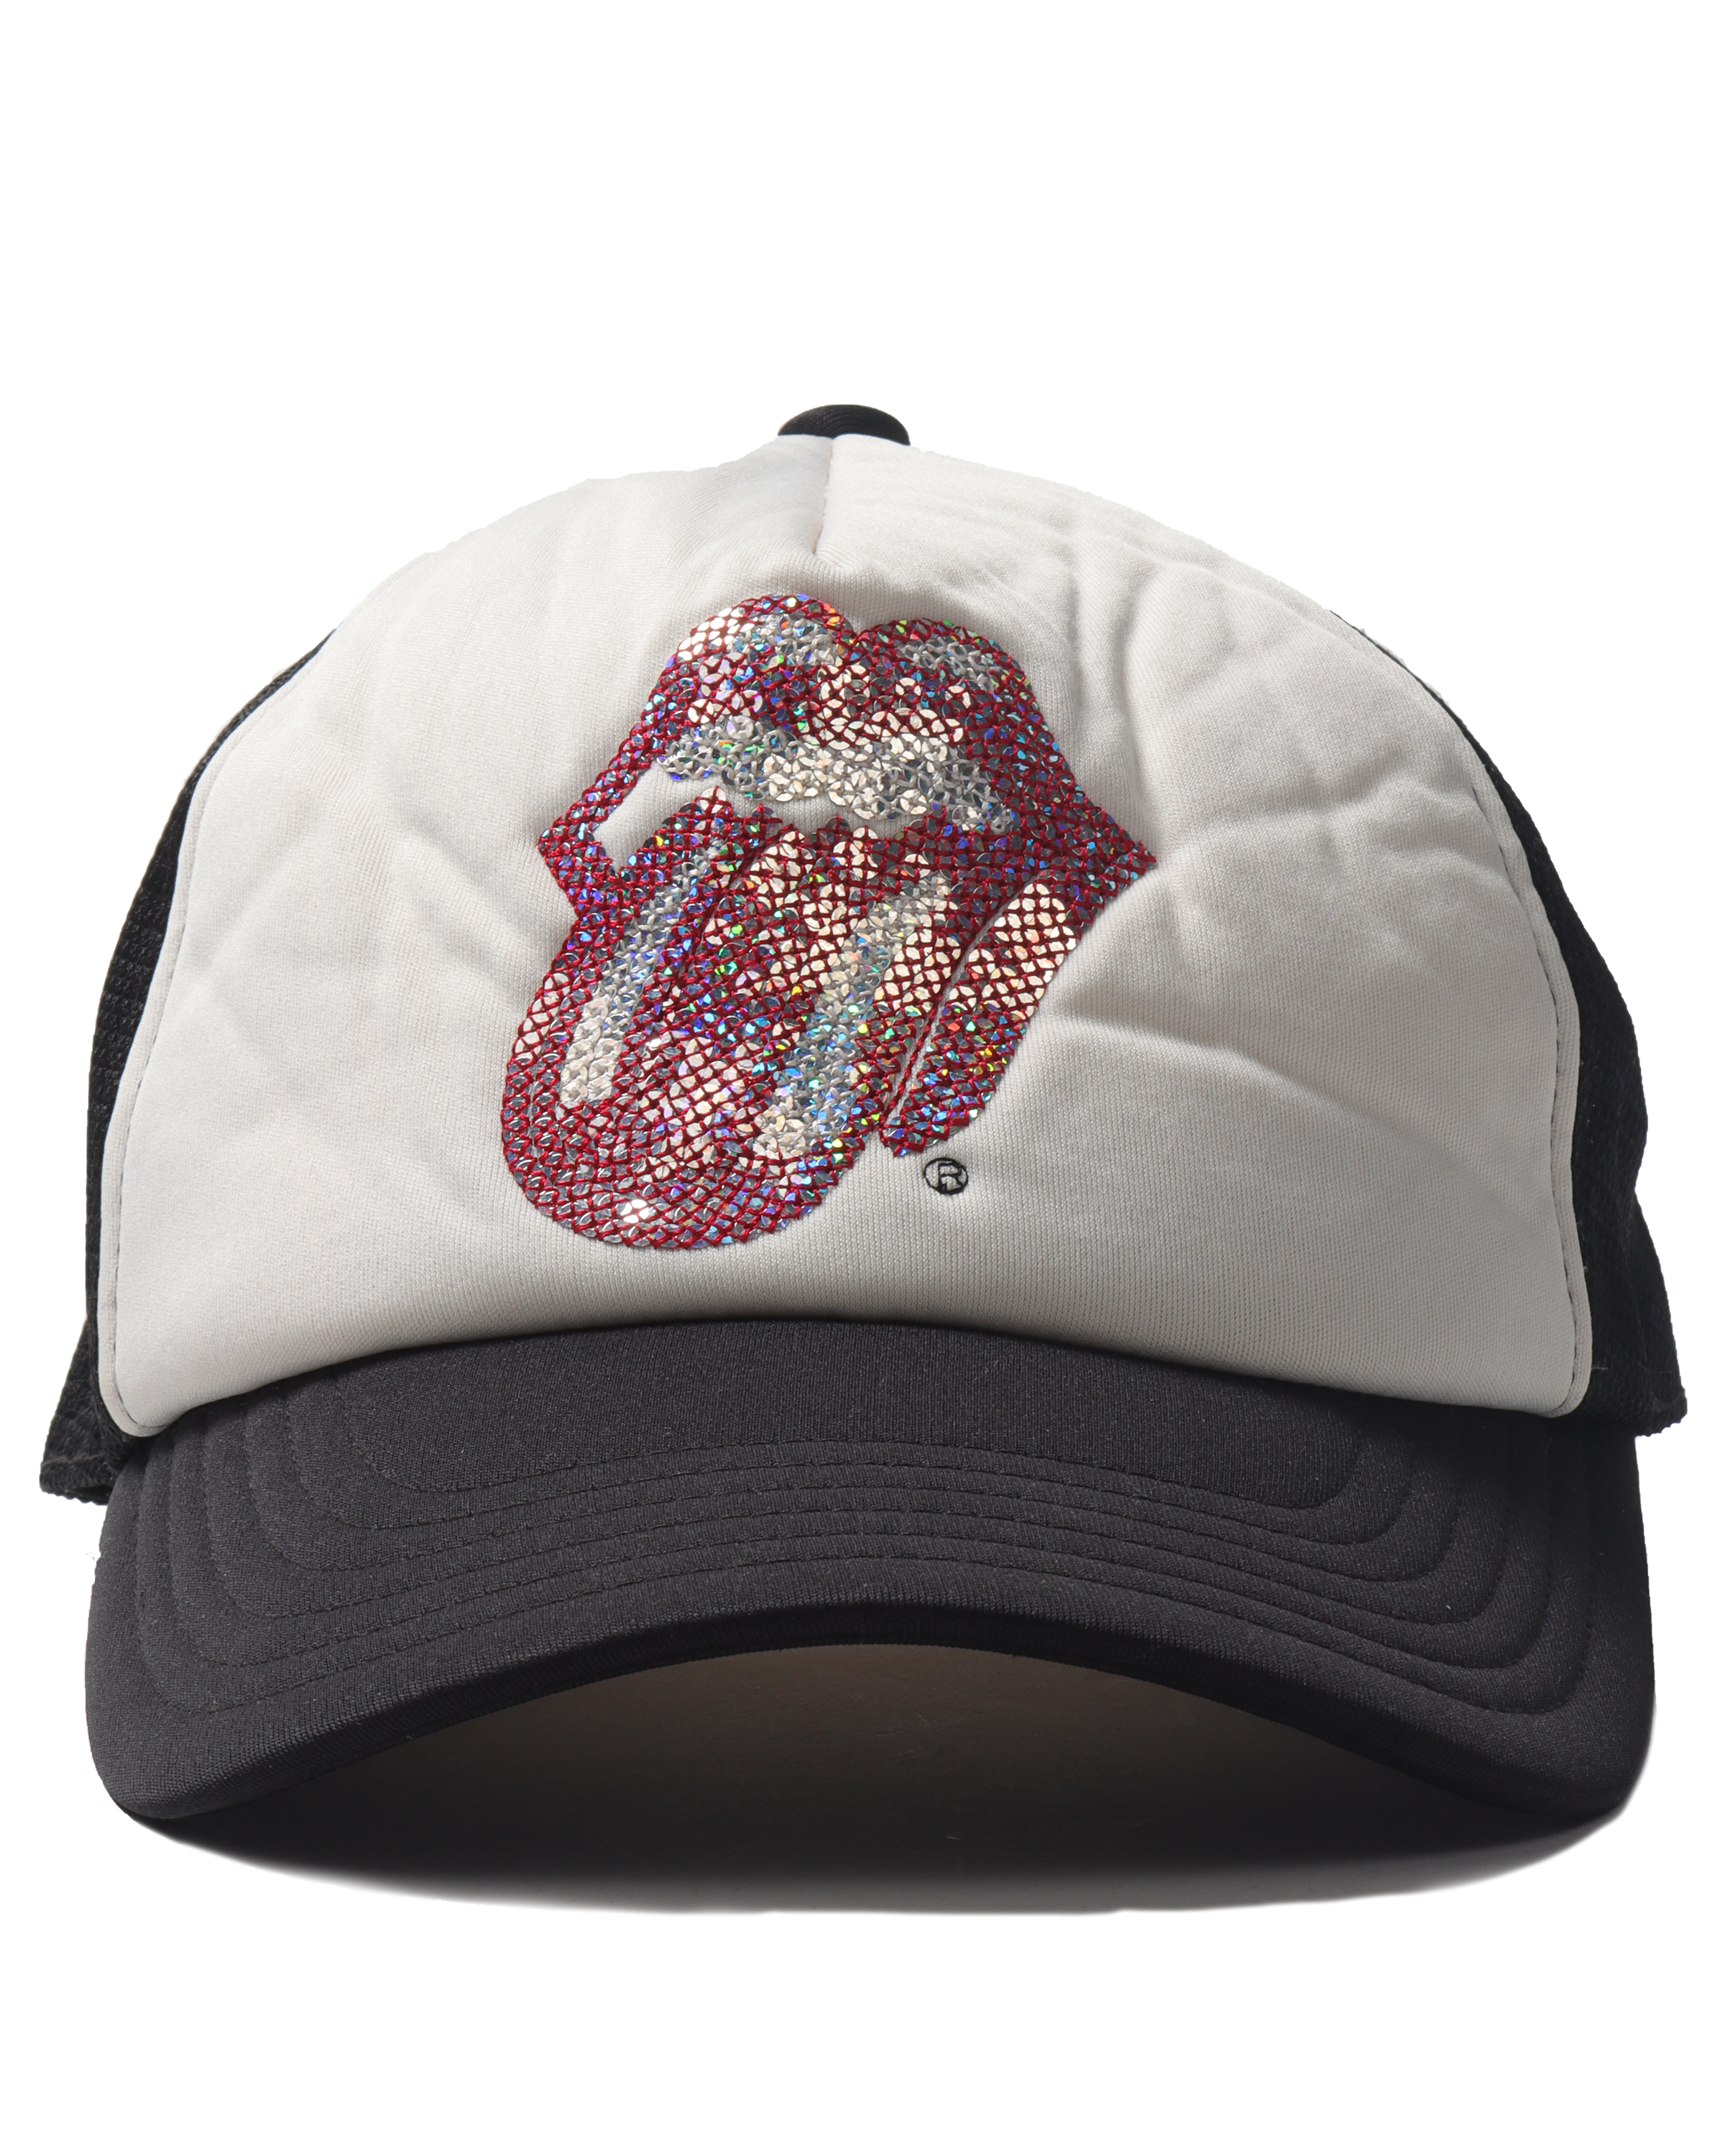 Rolling Stones Trucker Hat